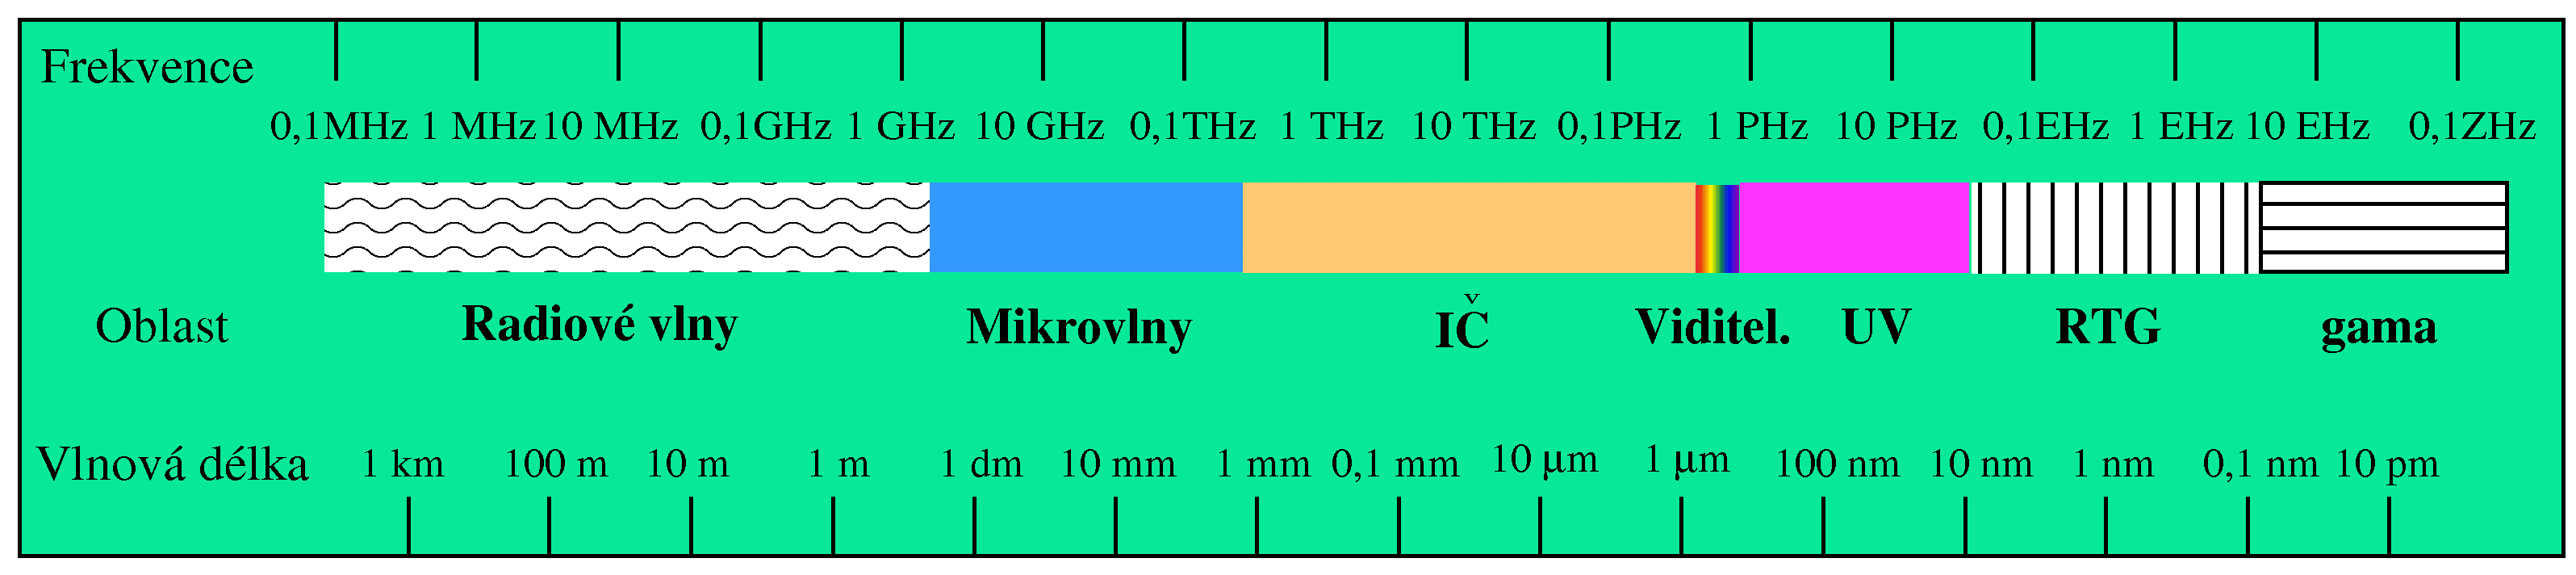 AČ, RM, JS: Optická spektroskopie 5 1 Úvod Spektroskopie označuje metody určení frekvence ν, resp. vlnové délky λ = c/ν elektromagnetického záření [1].